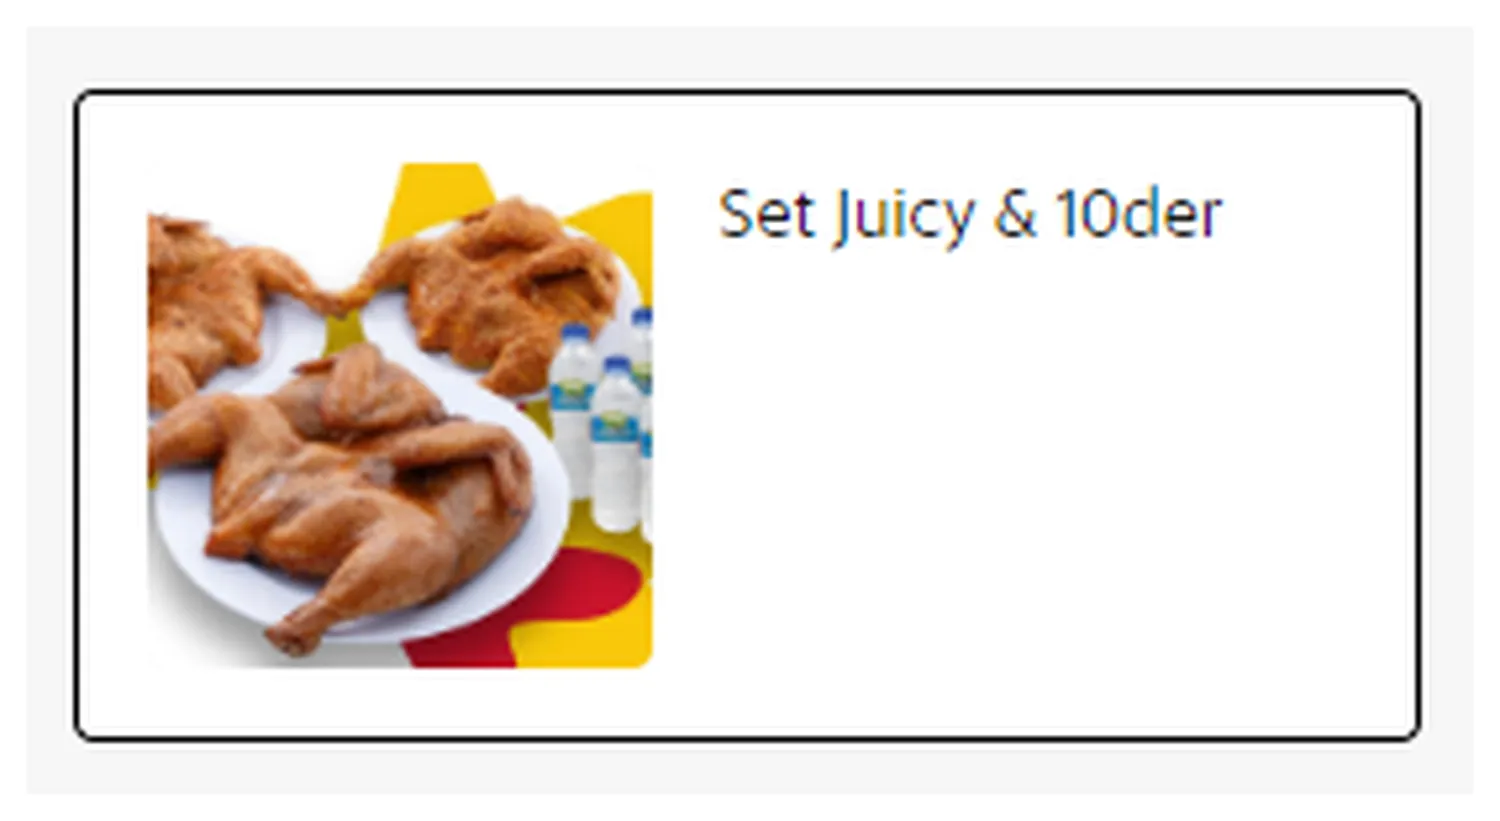 kedai ayamas menu malaysia juicy 10der meal